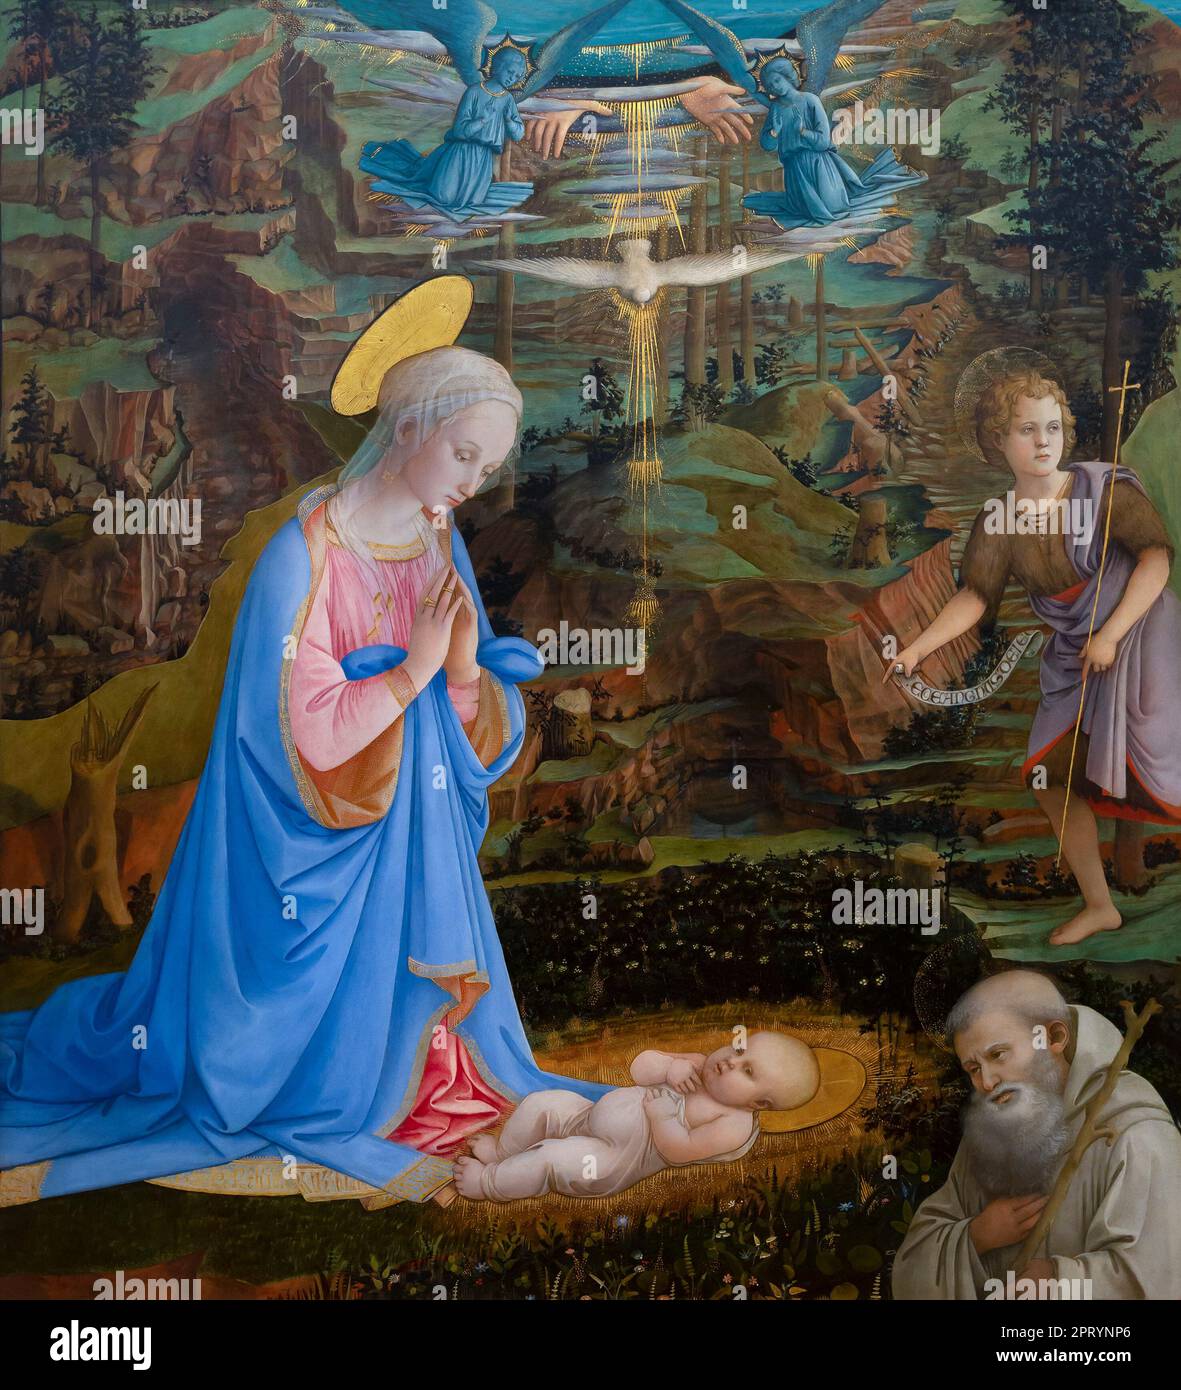 L'Adoration de l'Enfant Jésus avec le jeune Saint Jean-Baptiste, de St-Romuald, anges, les mains de Dieu le Père et le Saint-Esprit comme une colombe, Fíli Banque D'Images